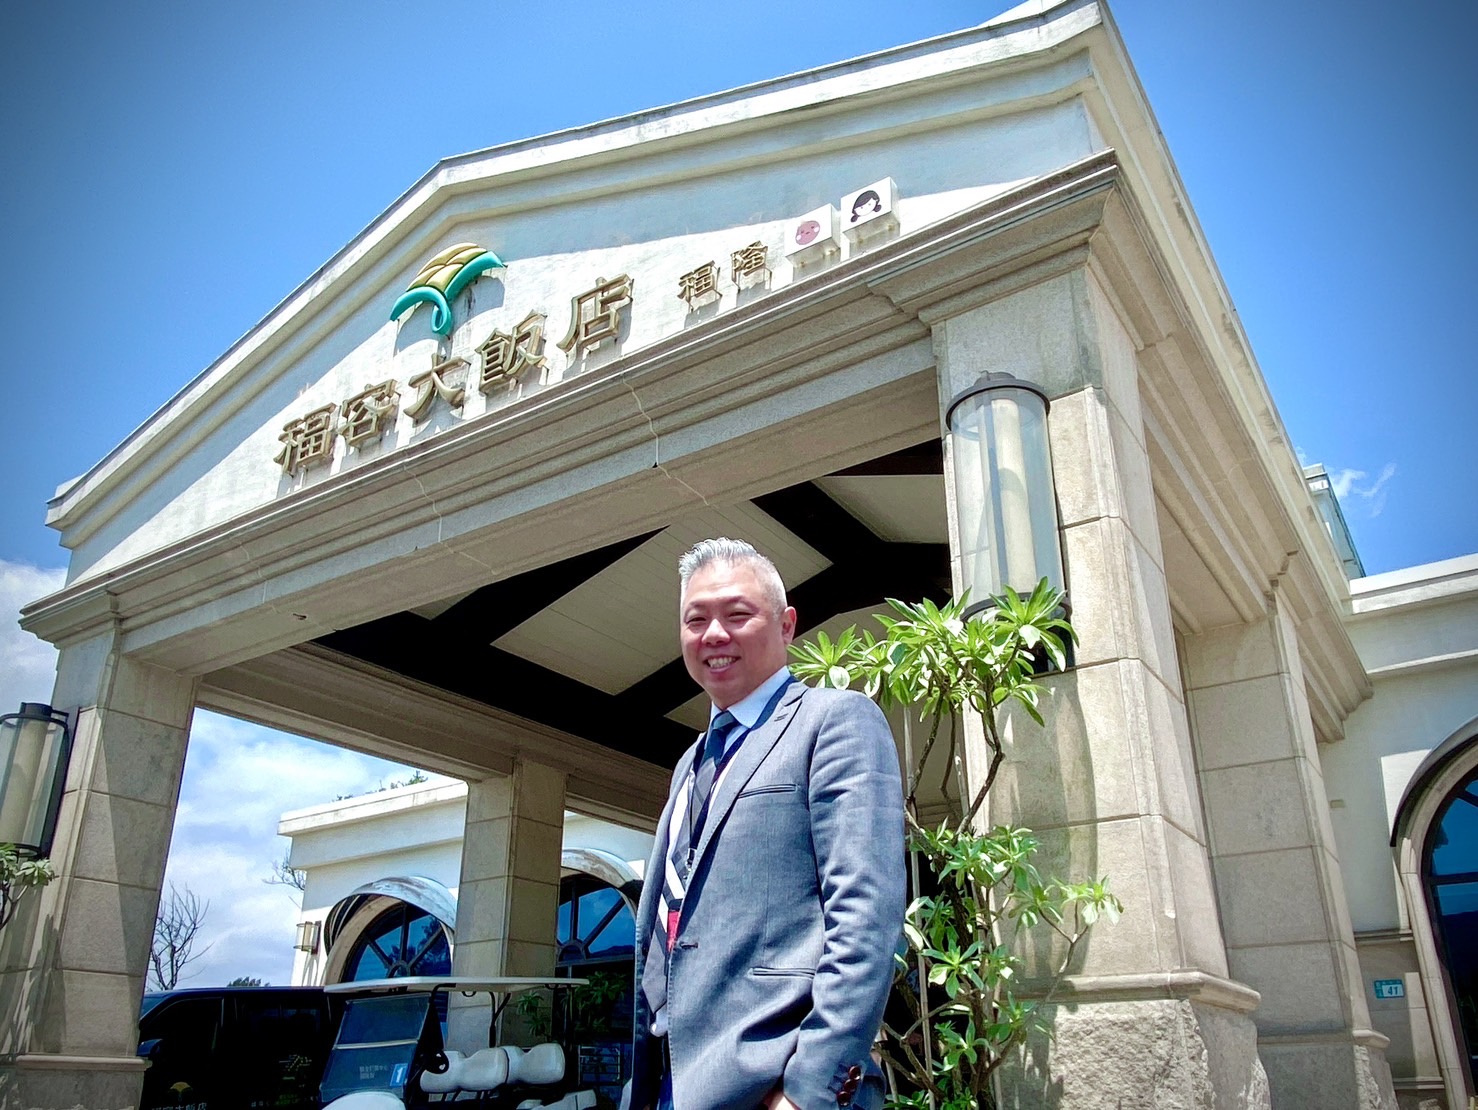 福 容 大 飯 店 福 隆 駐 店 總 經 理 戴 瑞 宏 ， 邀 請 旅 客 到 福 隆 體 驗 特 色 溫 泉 。 